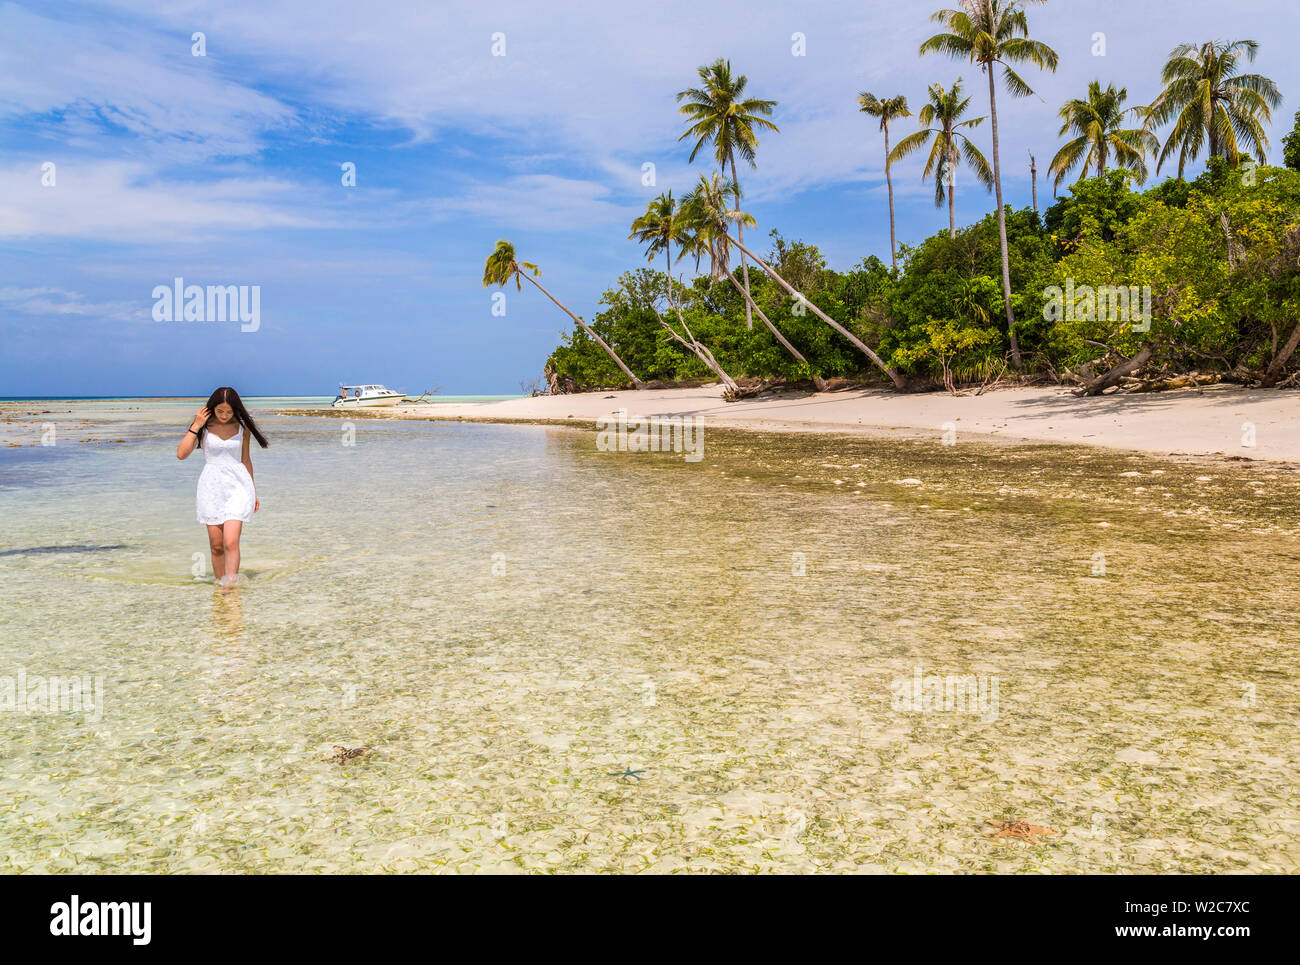 Giovane donna cinese & spiaggia tropicale idilliaco, nr Semporna, Sabah Borneo, Malaysia Foto Stock